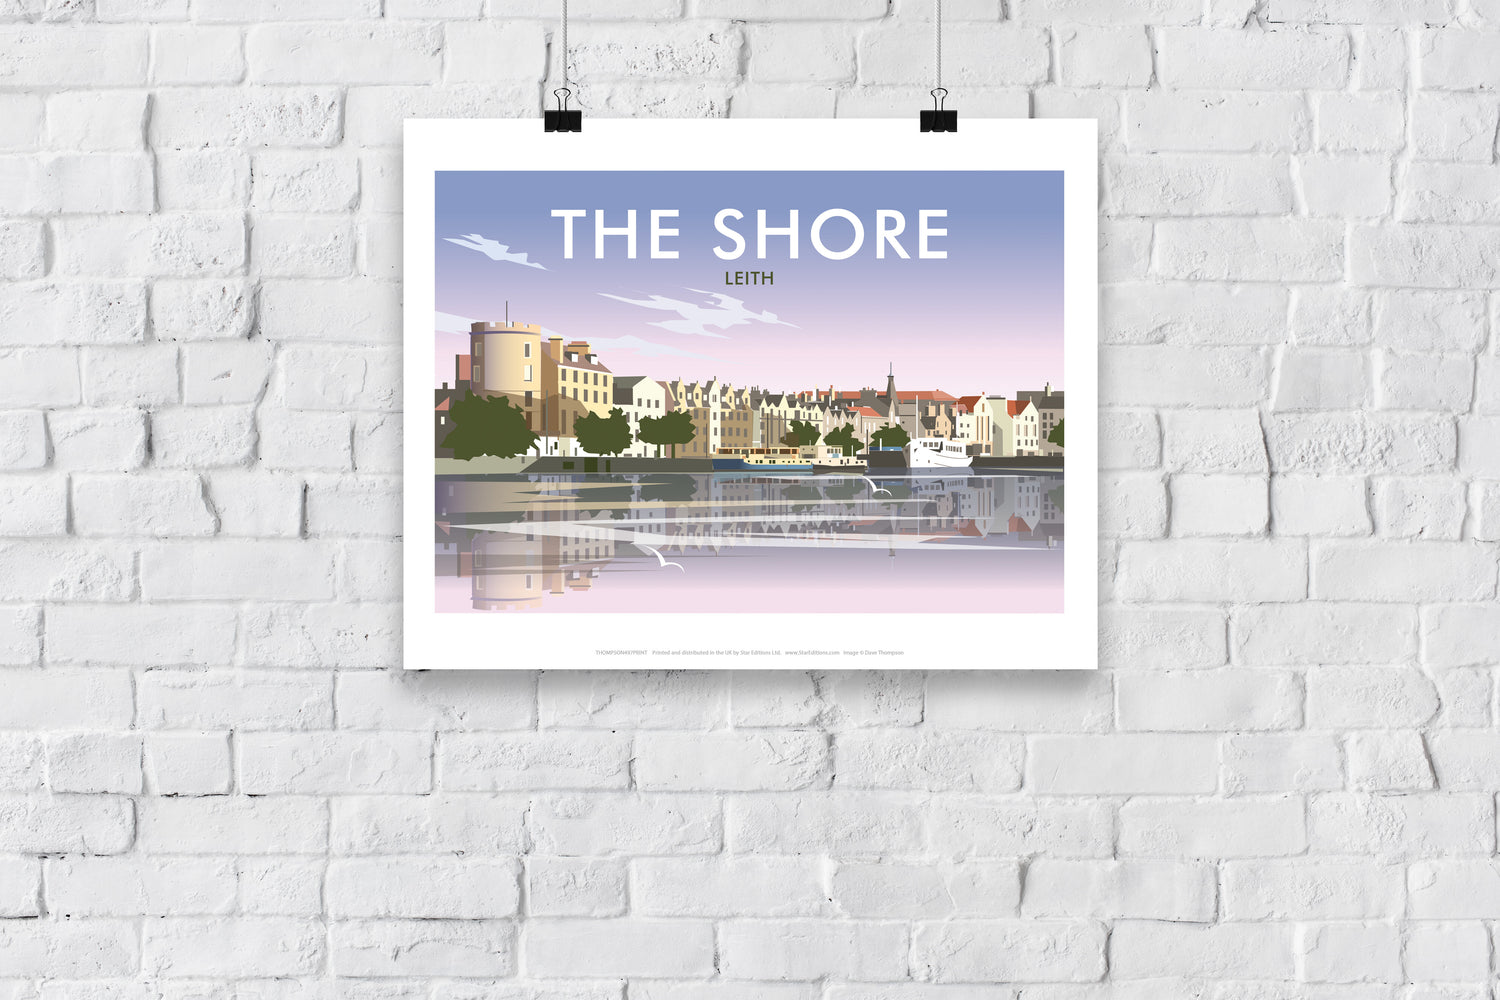 The Shore, Leith - Art Print